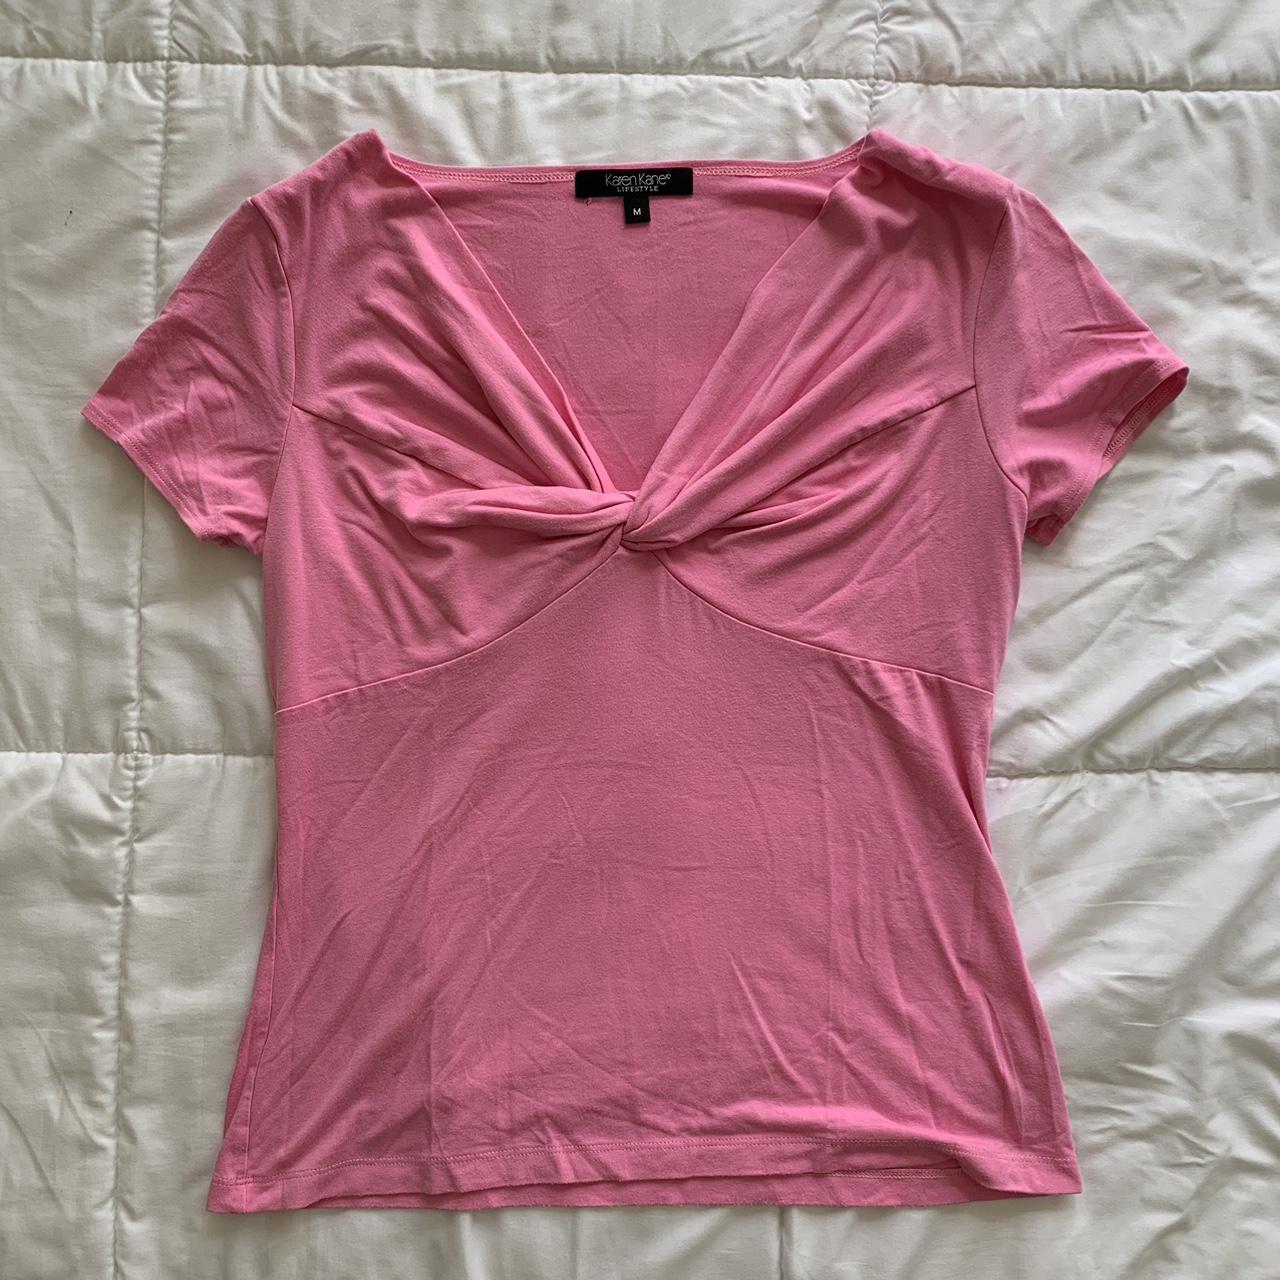 Karen Kane Women's Pink T-shirt